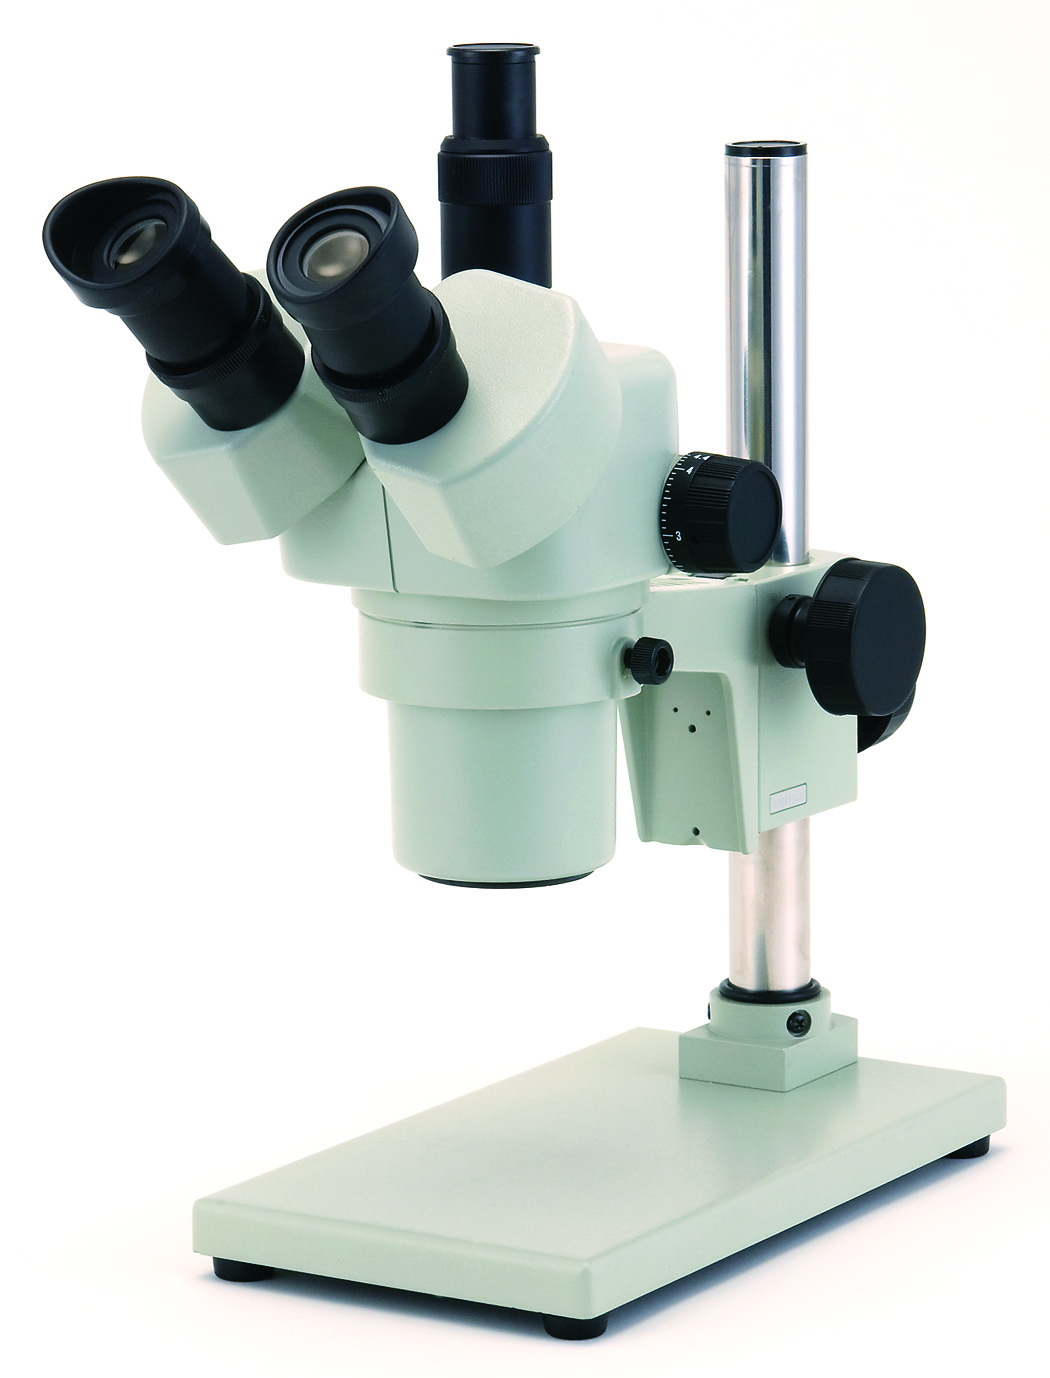 カートン光学 ズームシステム実体顕微鏡<双眼式>